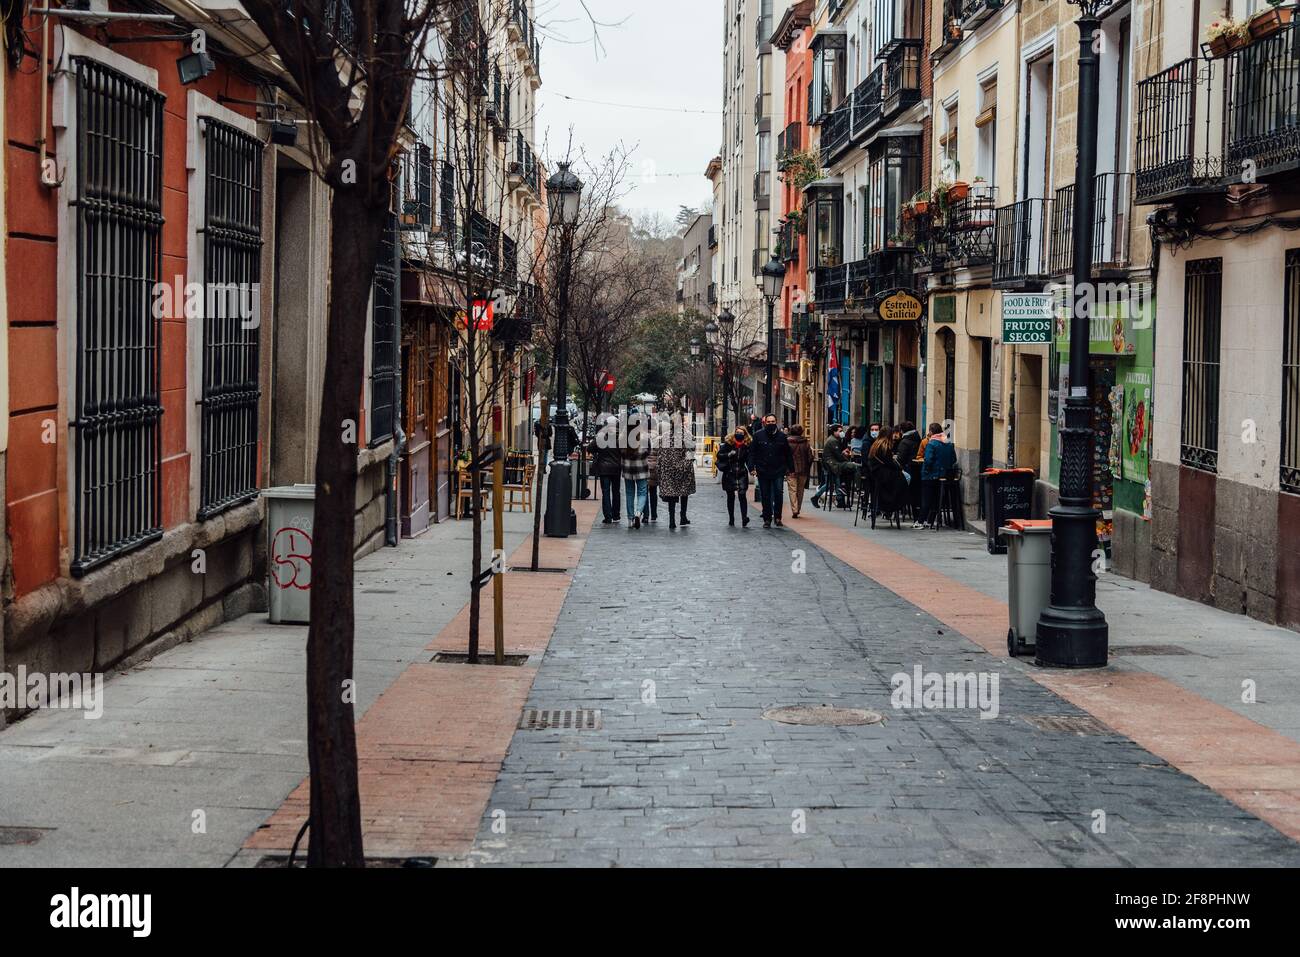 Madrid, Espagne - 31 janvier 2021: Vue panoramique de la célèbre rue Las Huertas dans le centre historique de Madrid pendant les restrictions pour la pandémie de coronavirus Banque D'Images